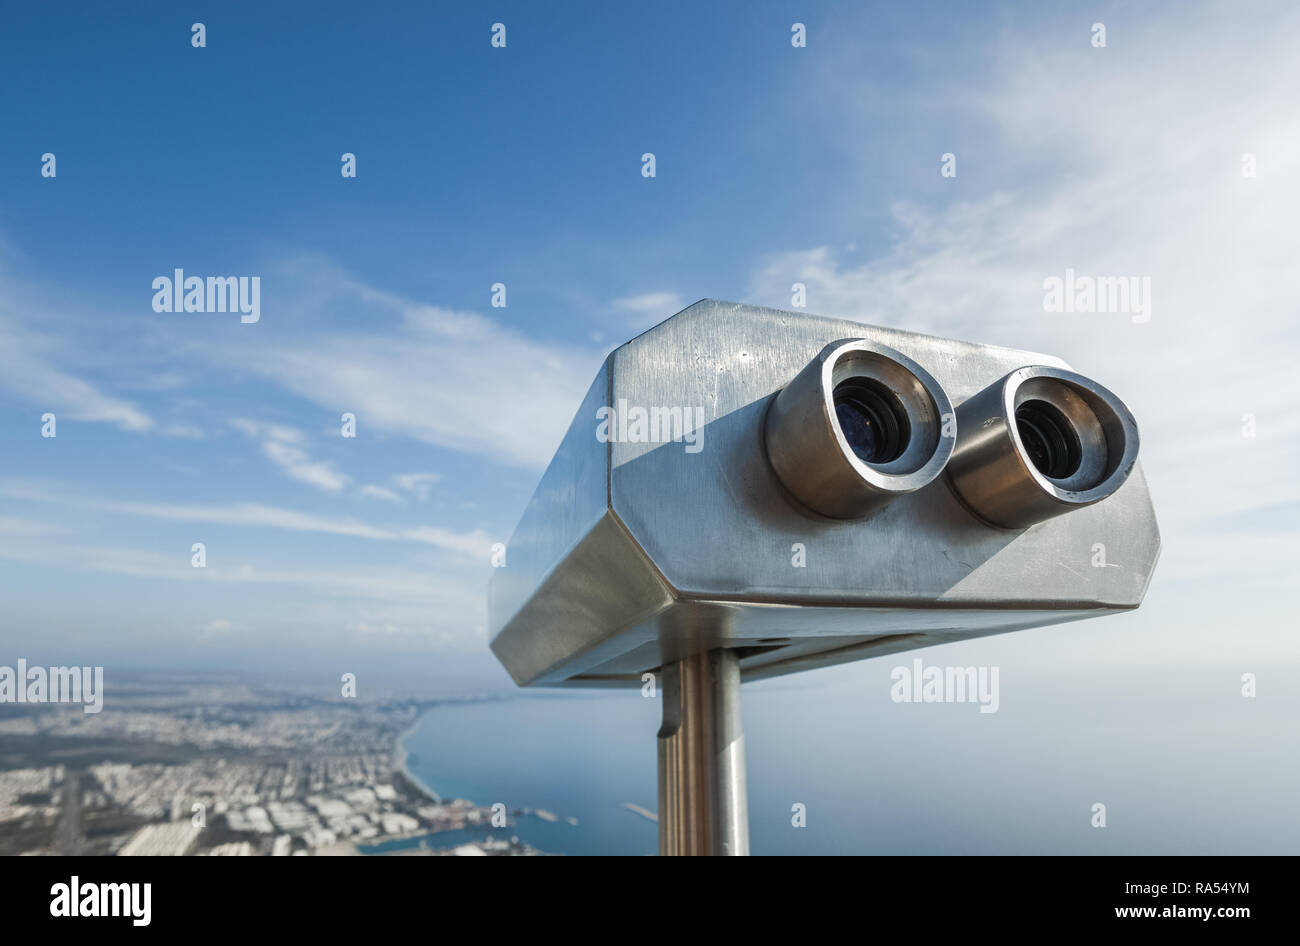 Metall grau Münzautomaten Teleskop am schönen Sommer Panoramablick auf Stadtbild, blauer Himmel und Meer Wasser isoliert. Türkei, Antalya Stadt. Stockfoto